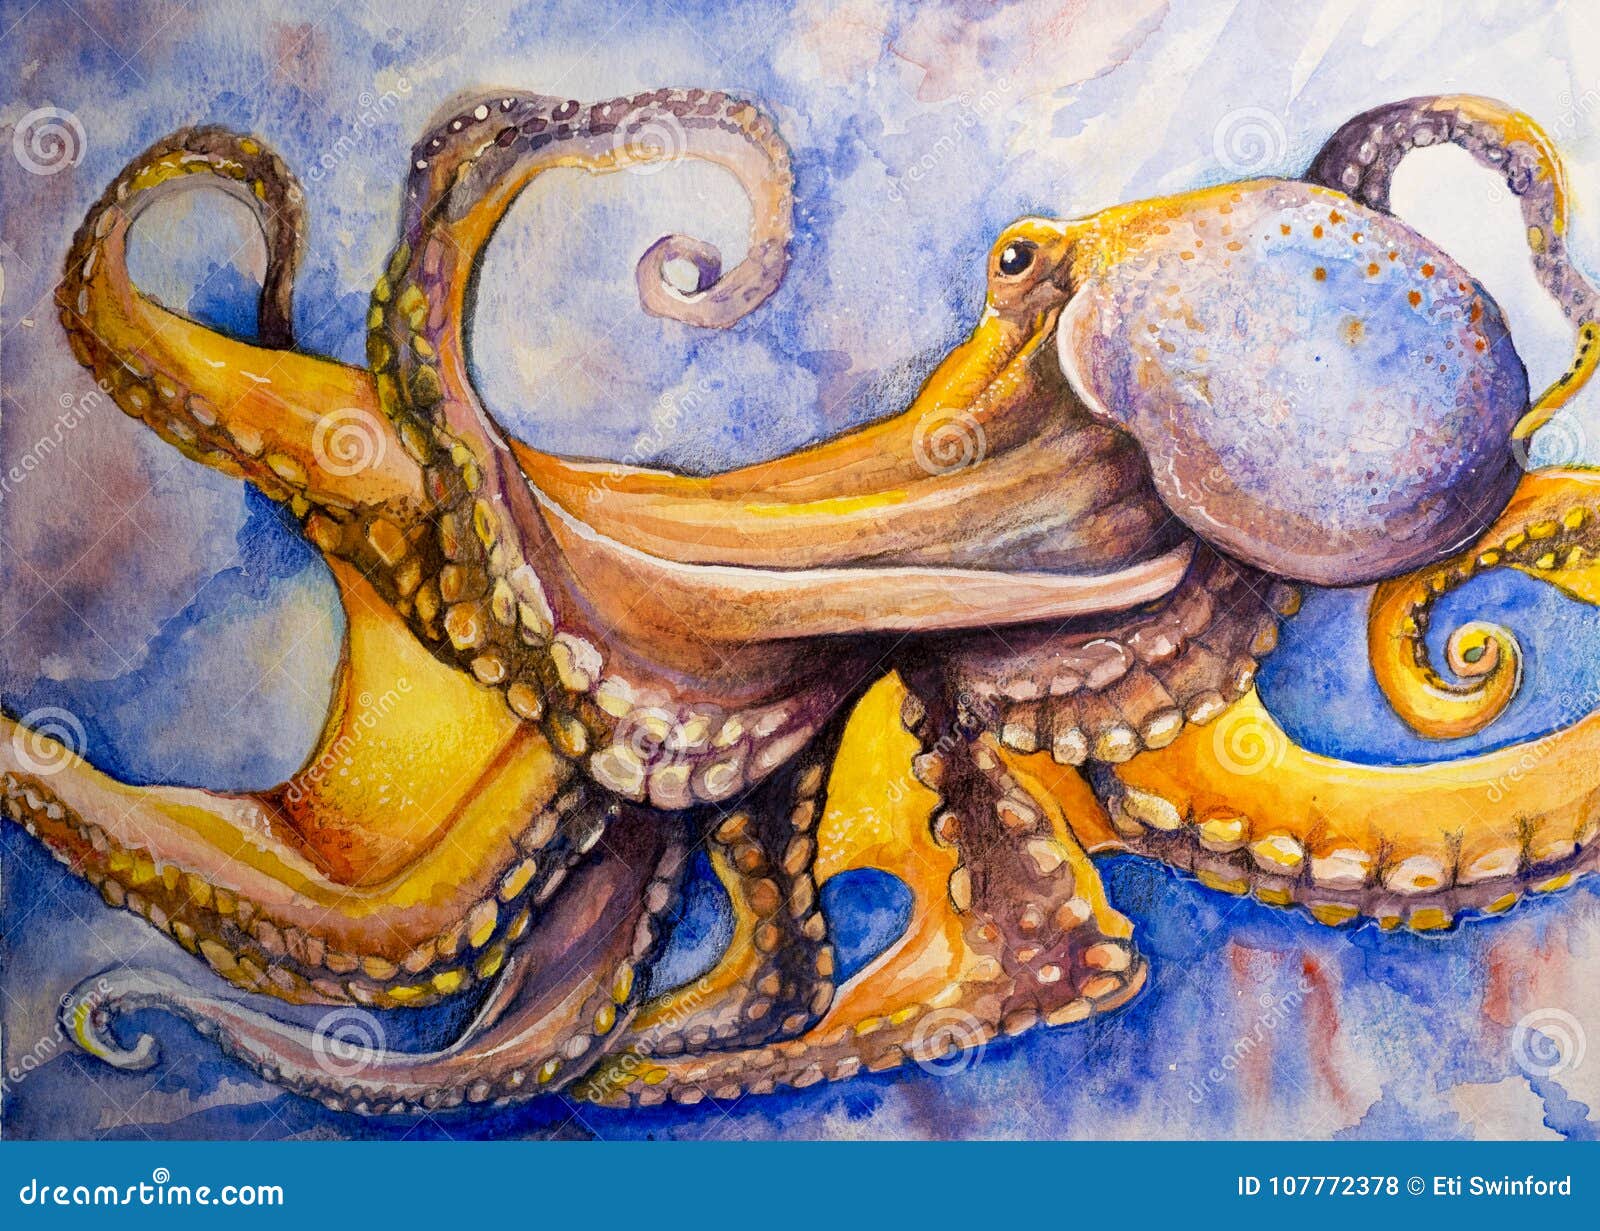 watercolor art octopus